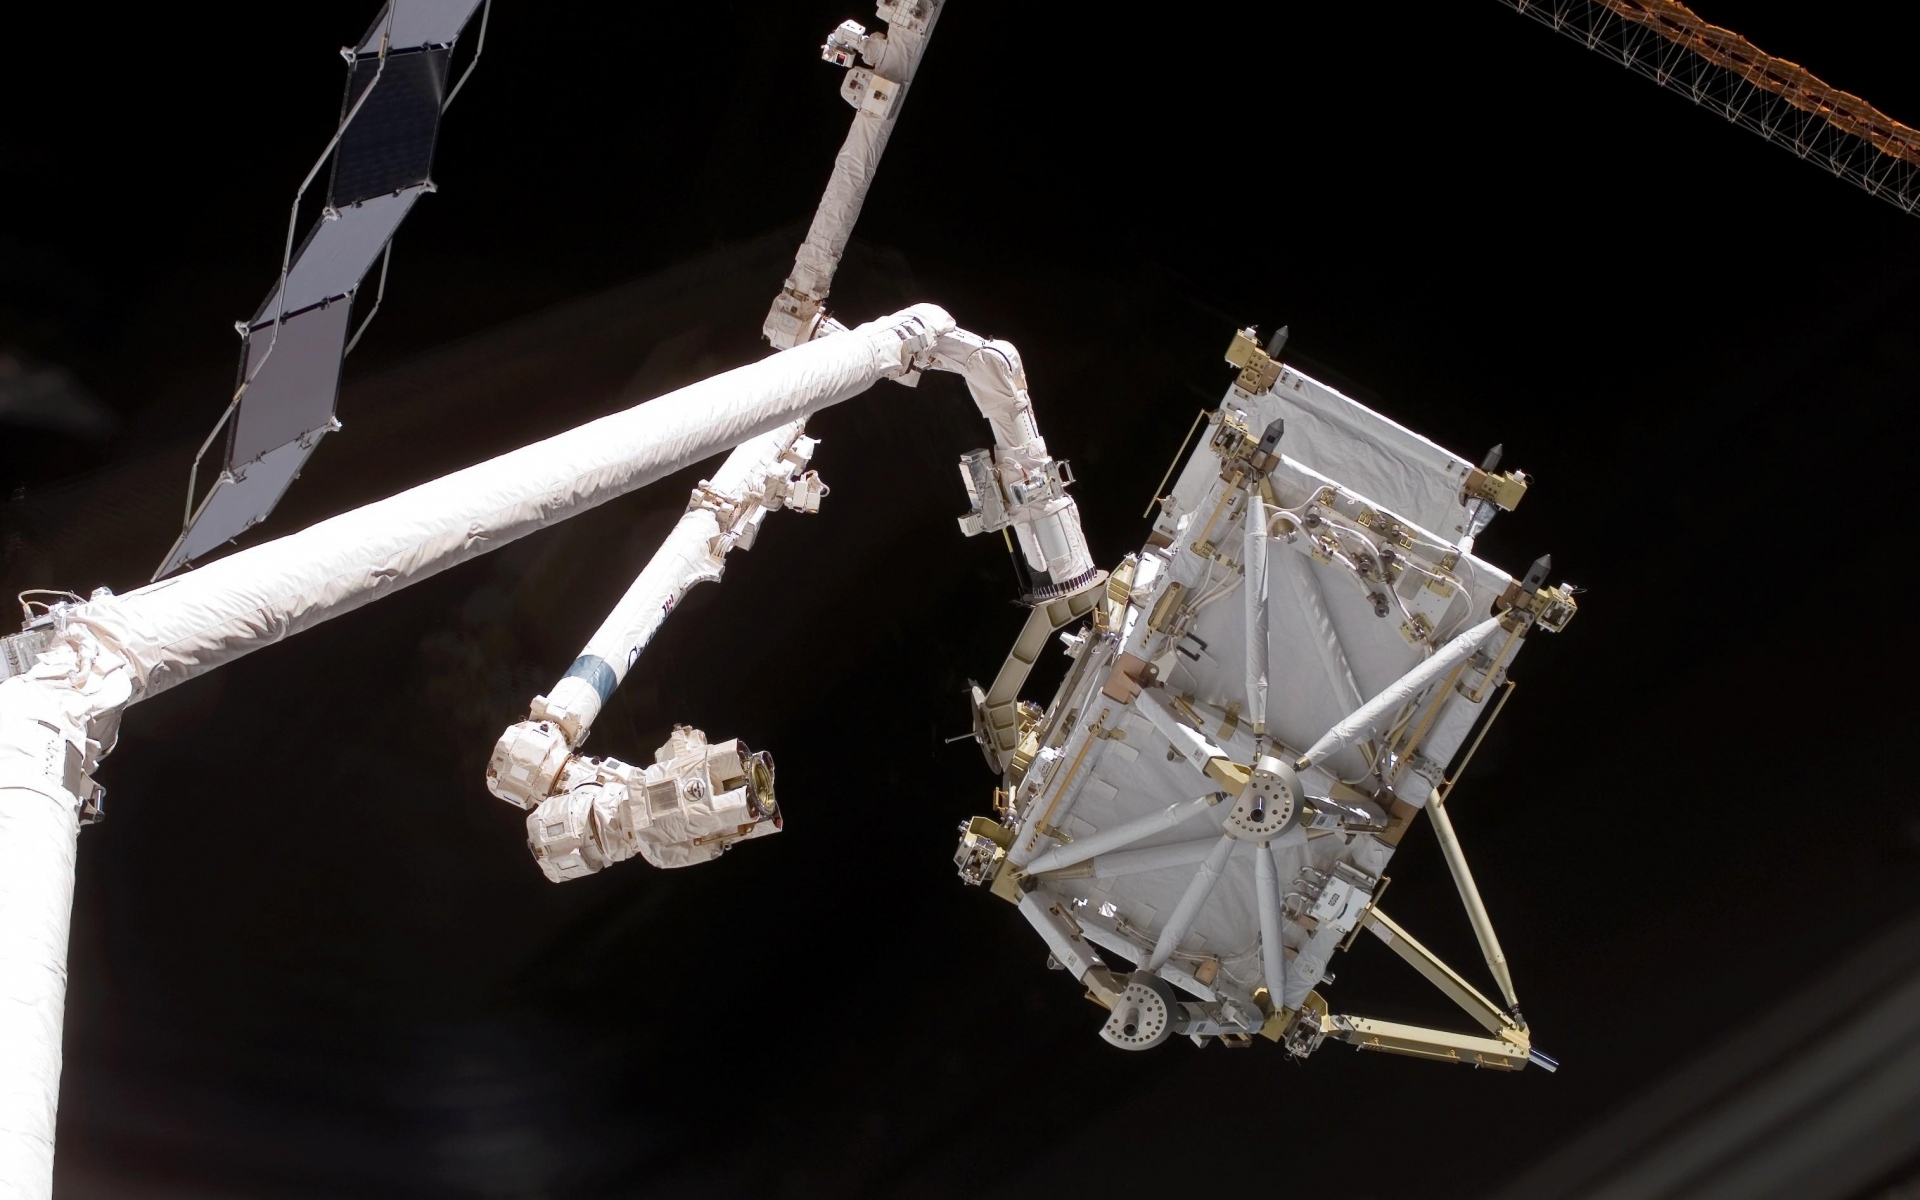 Картинки Станция iss, роботизированная рука, космос фото и обои на рабочий стол